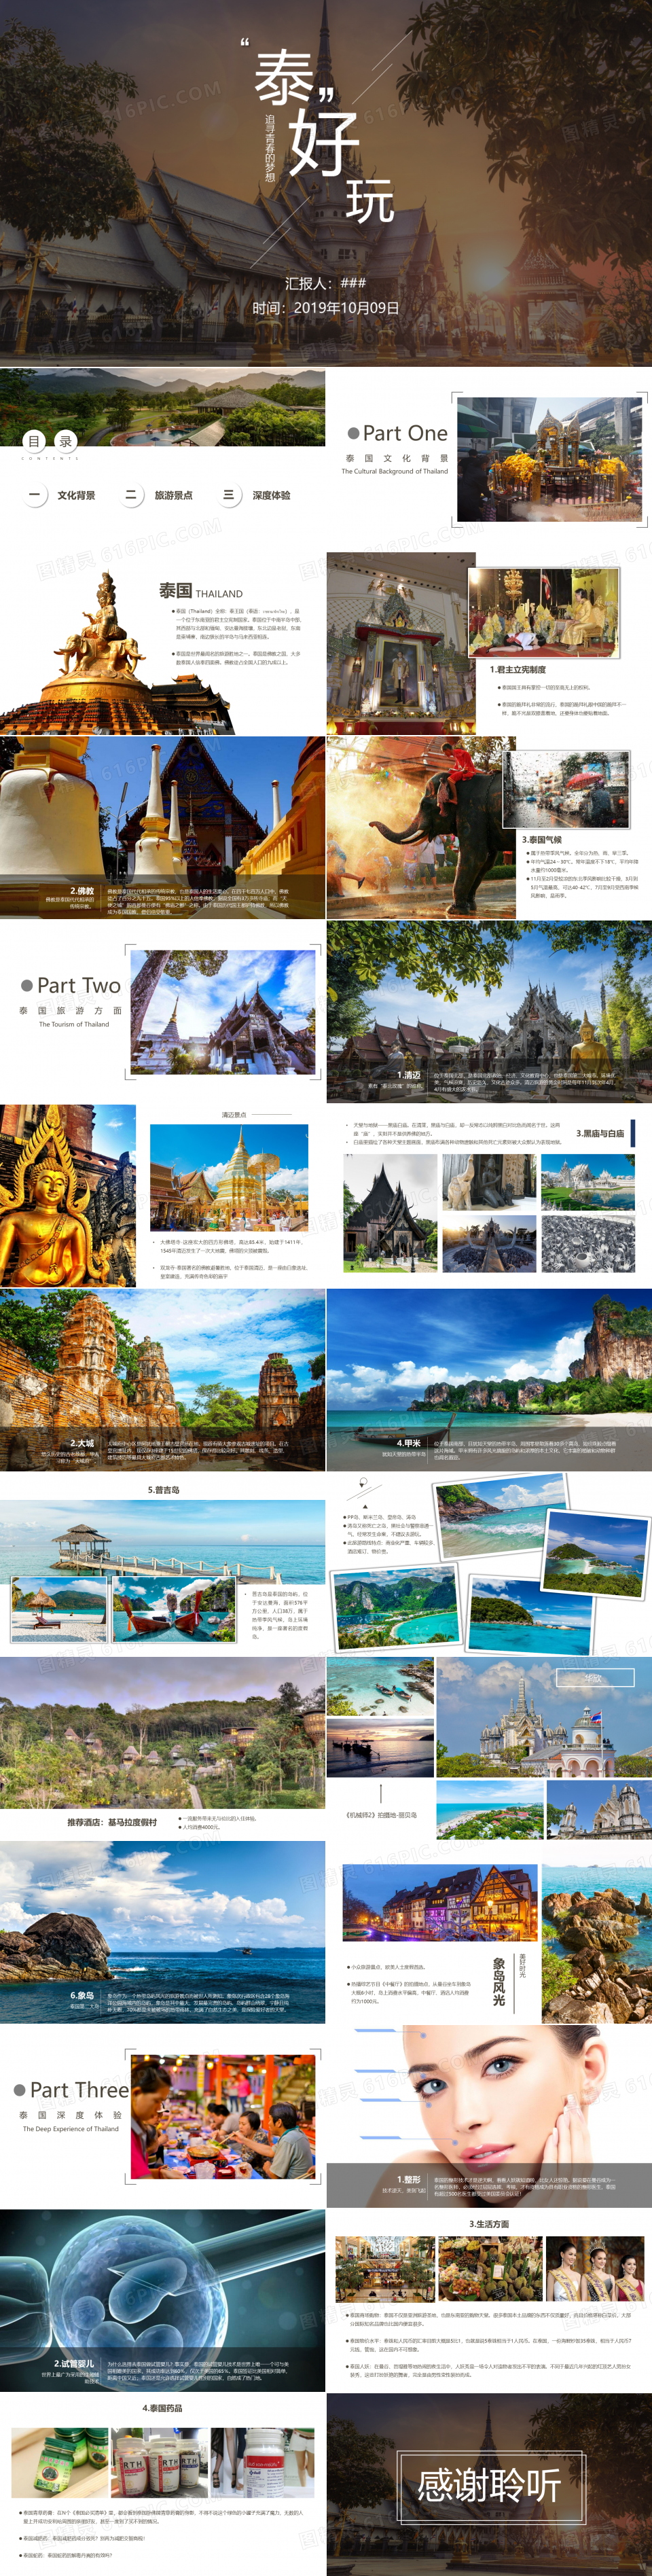 泰国风情东南亚旅游文化宣传介绍